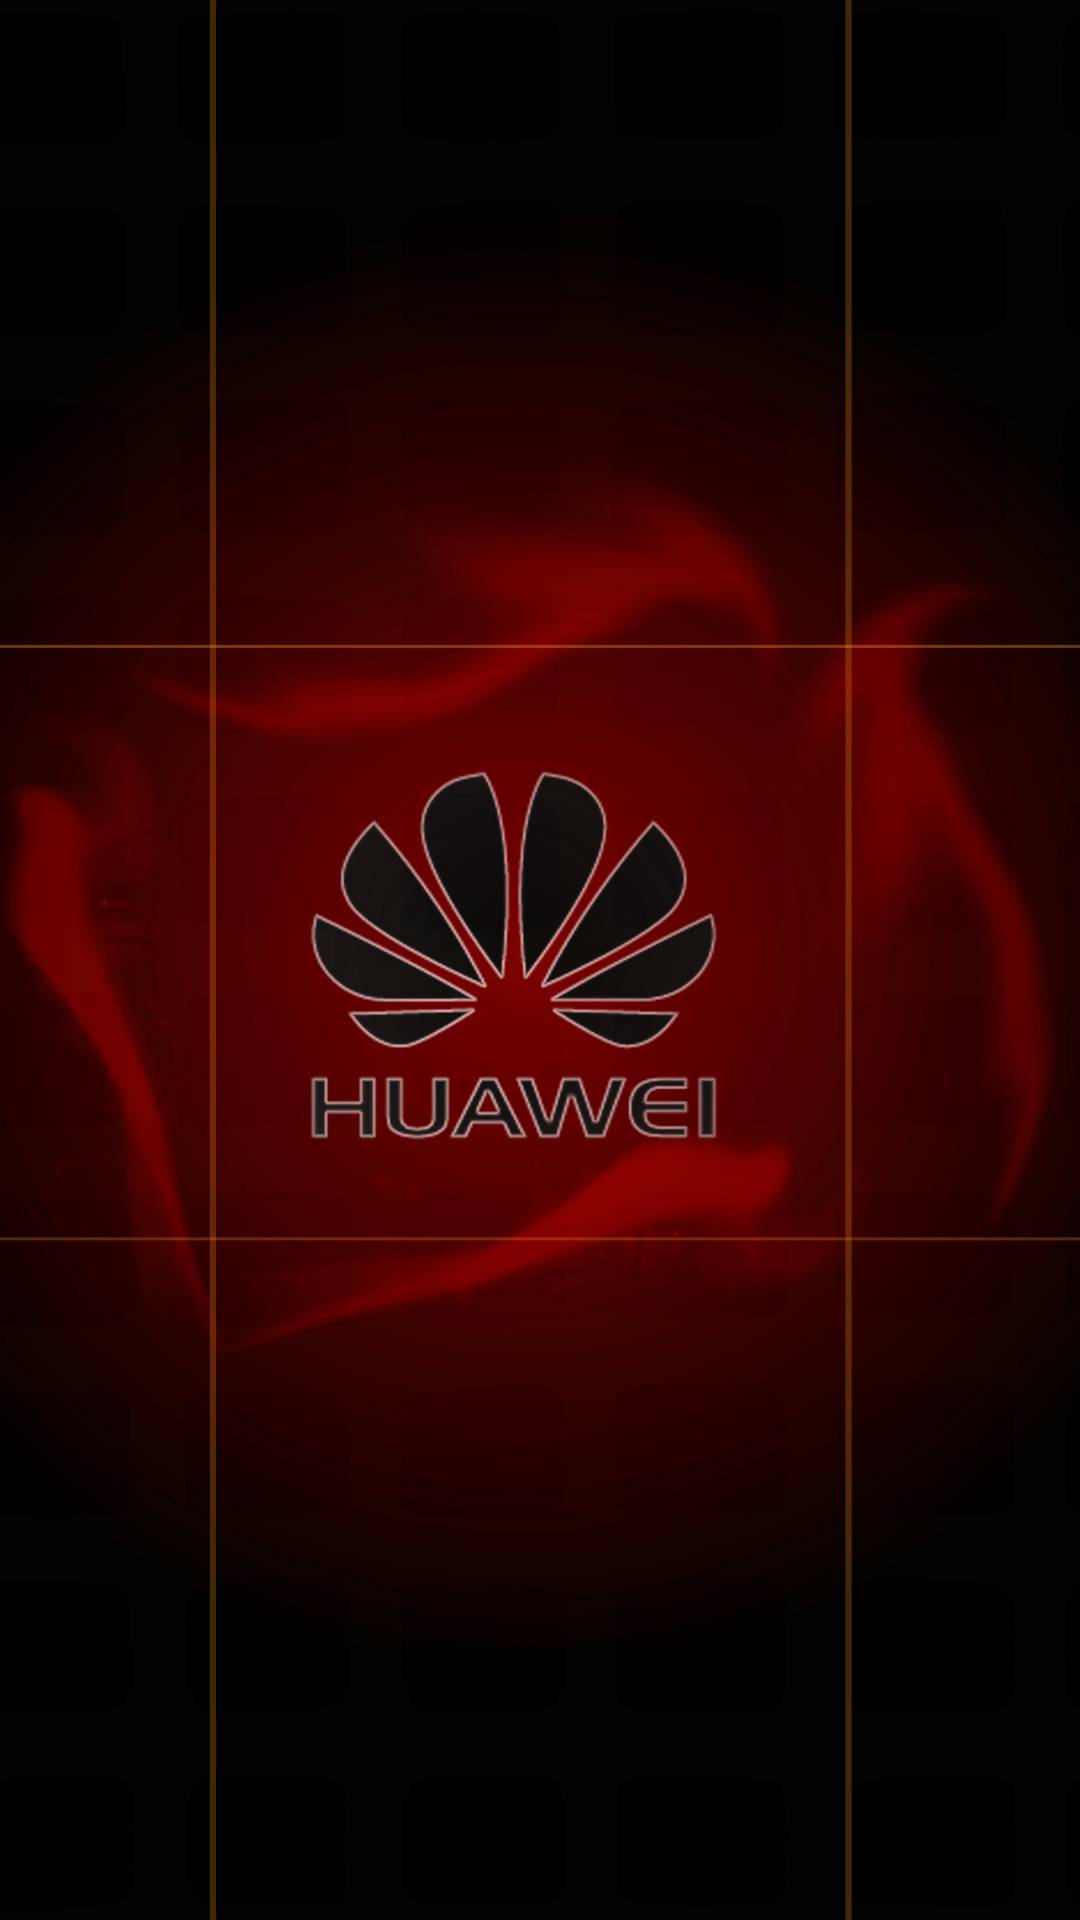 Телефон хуавей на столе. Заставка Huawei. Huawei логотип. Заставки на телефон Huawei. Хуавей логотип вертикальный.